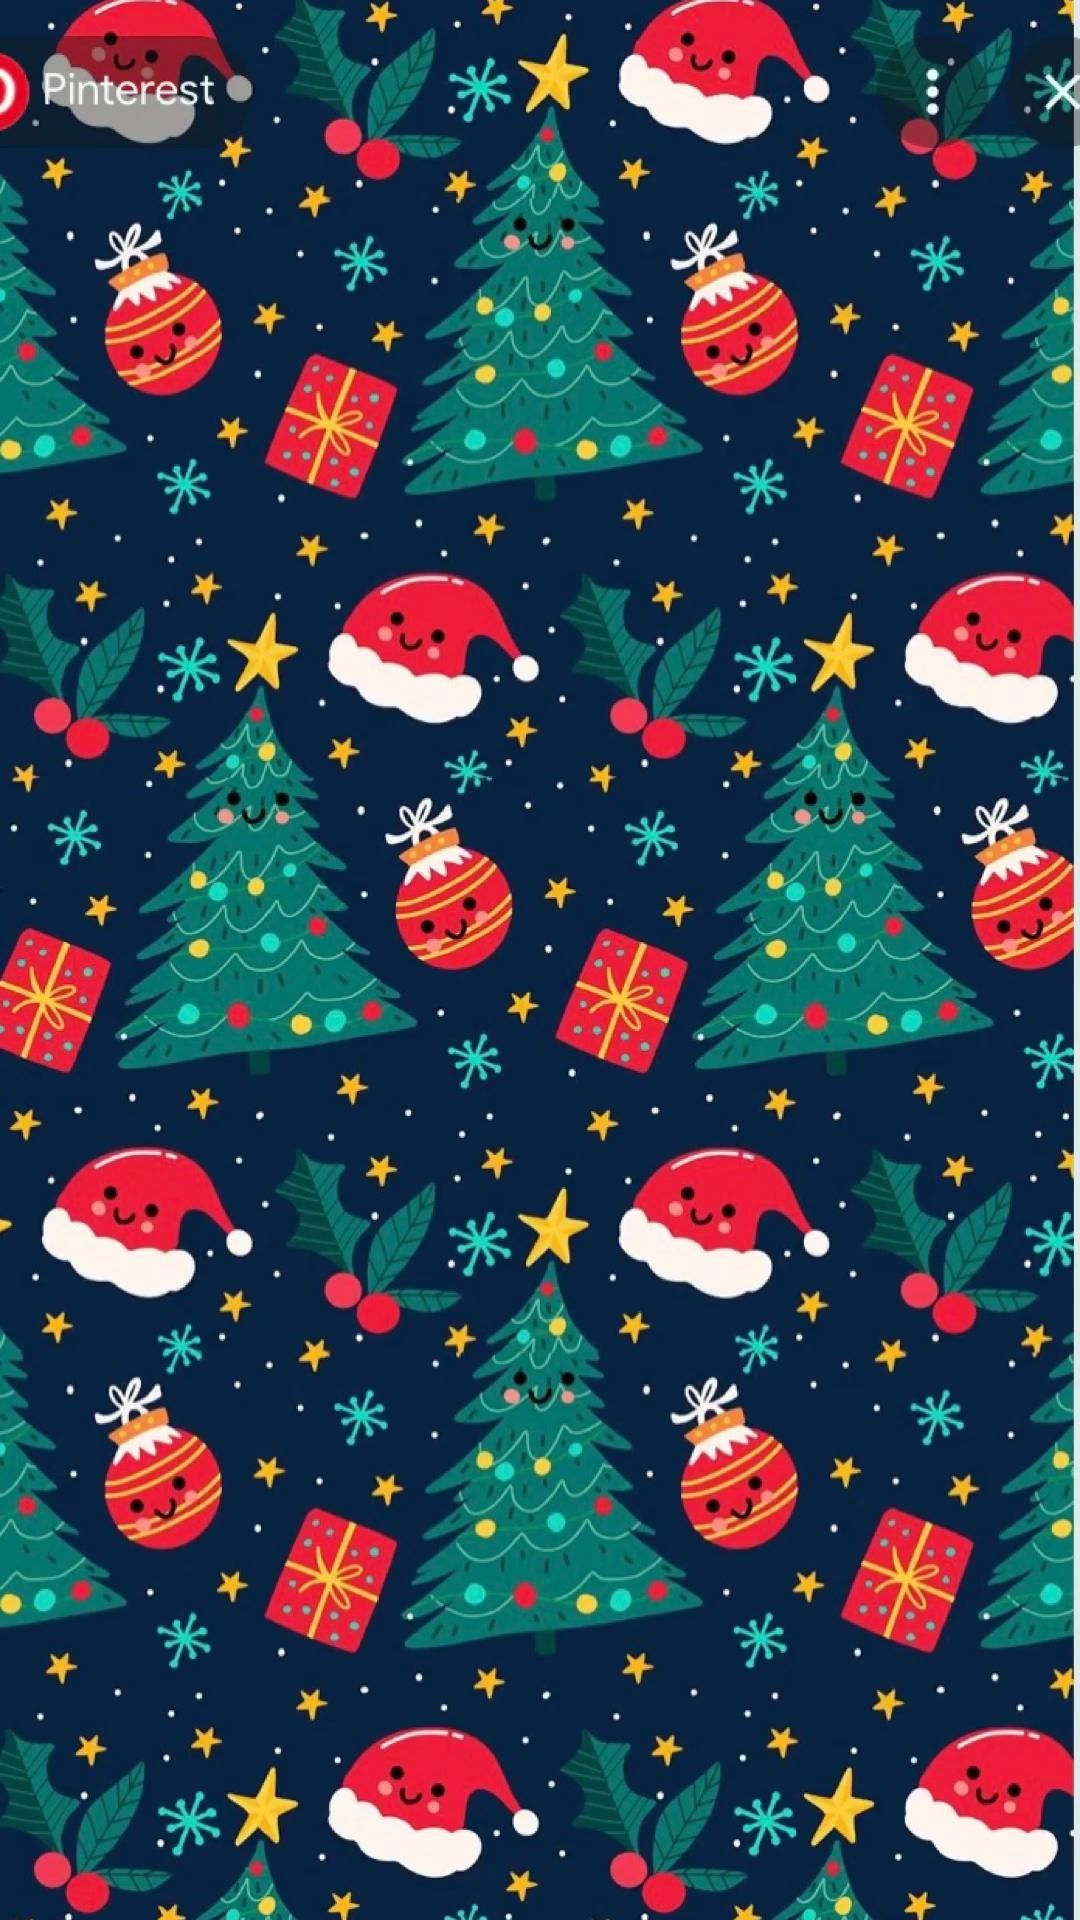 1080x1920 Christmas wallpaper | Christmas phone wallpaper, Cute christmas wallpaper, Christmas wallpaper